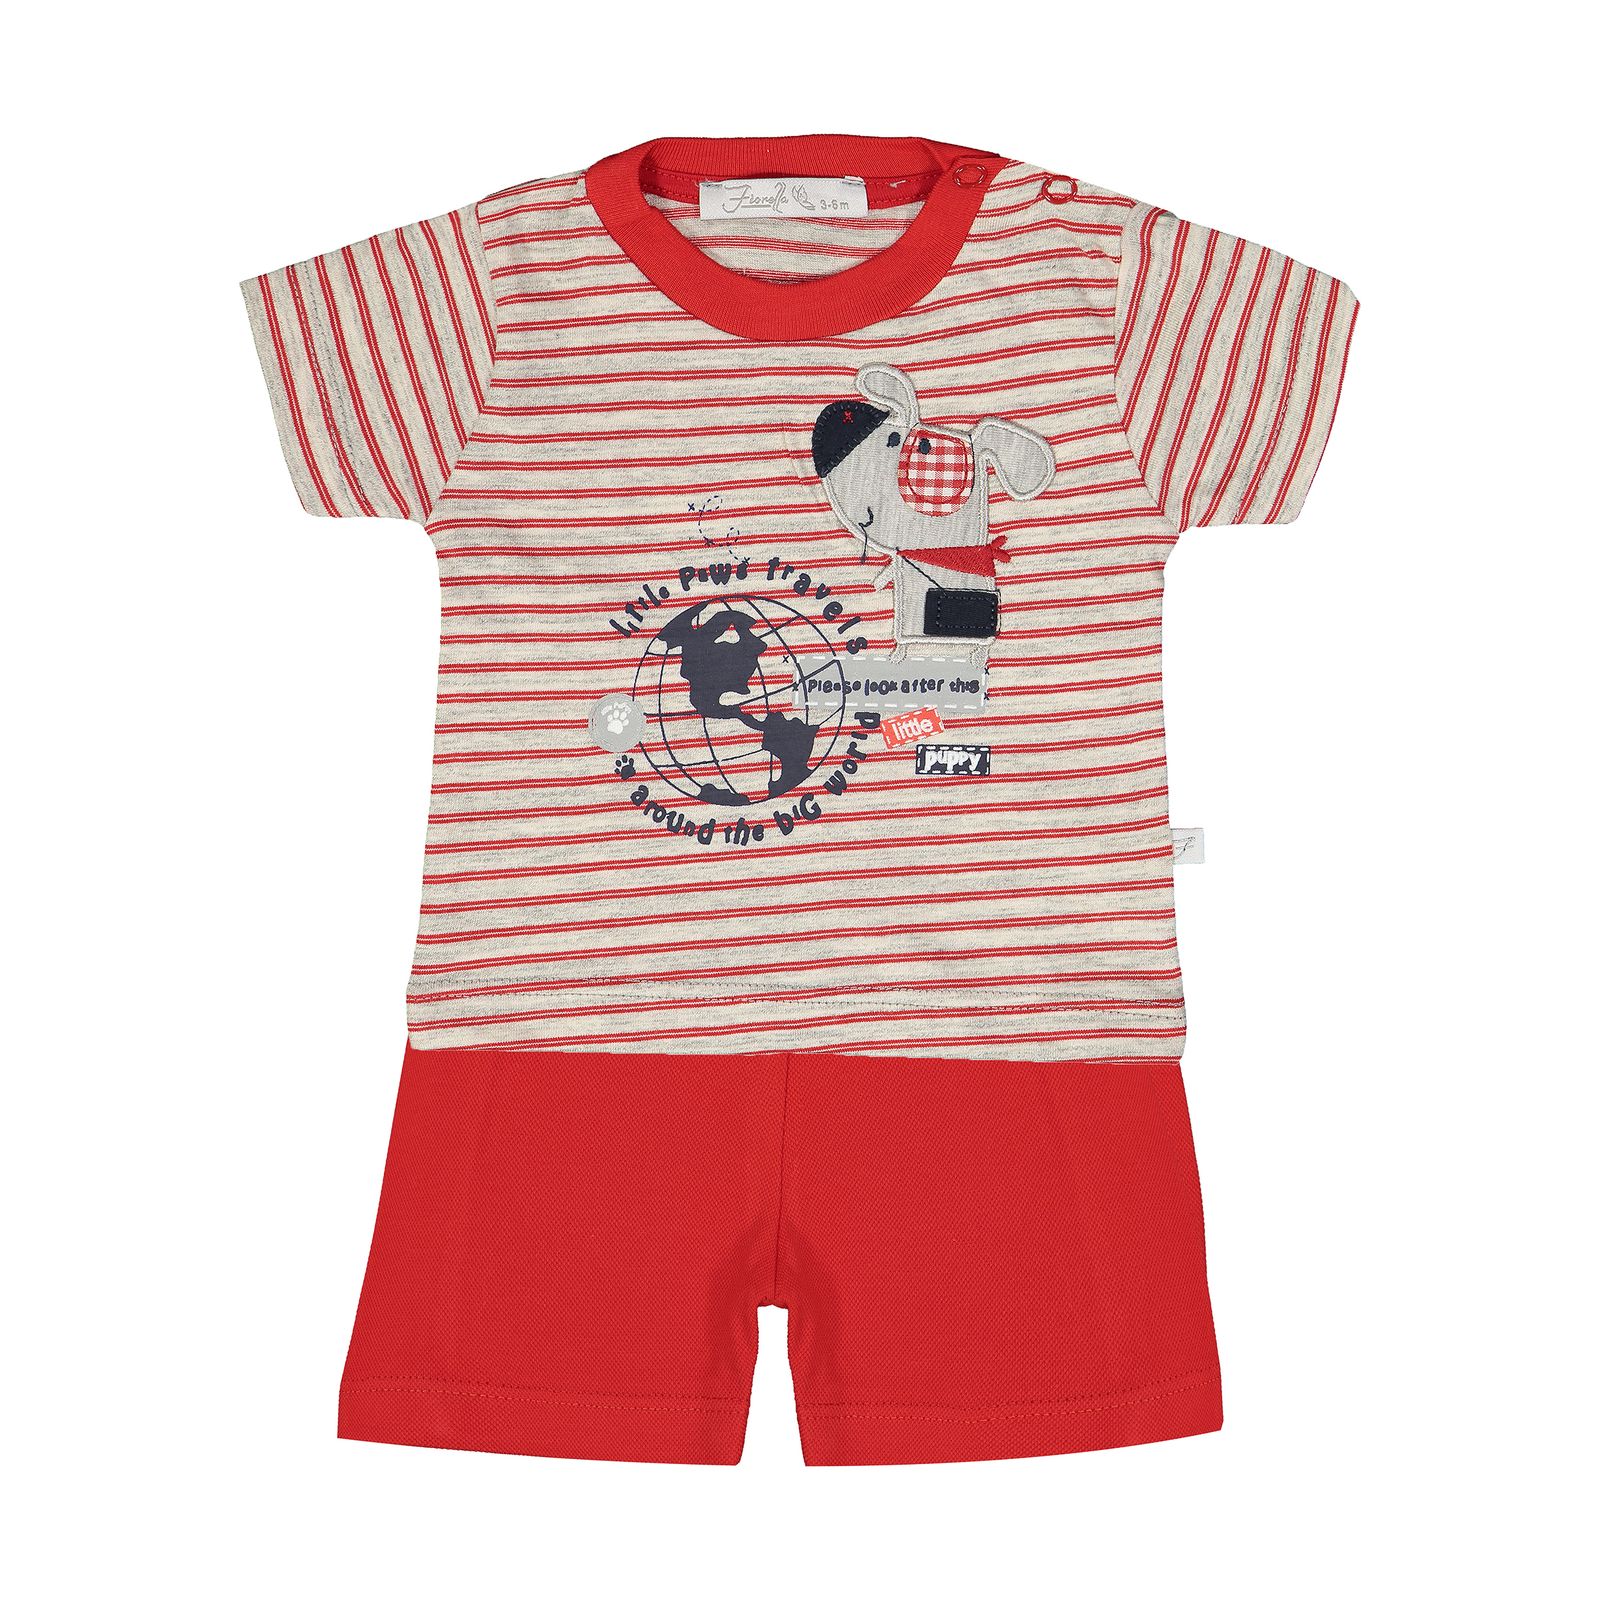 ست تی شرت و شلوارک راحتی نوزادی پسرانه فیورلا مدل 2091127-72 -  - 1